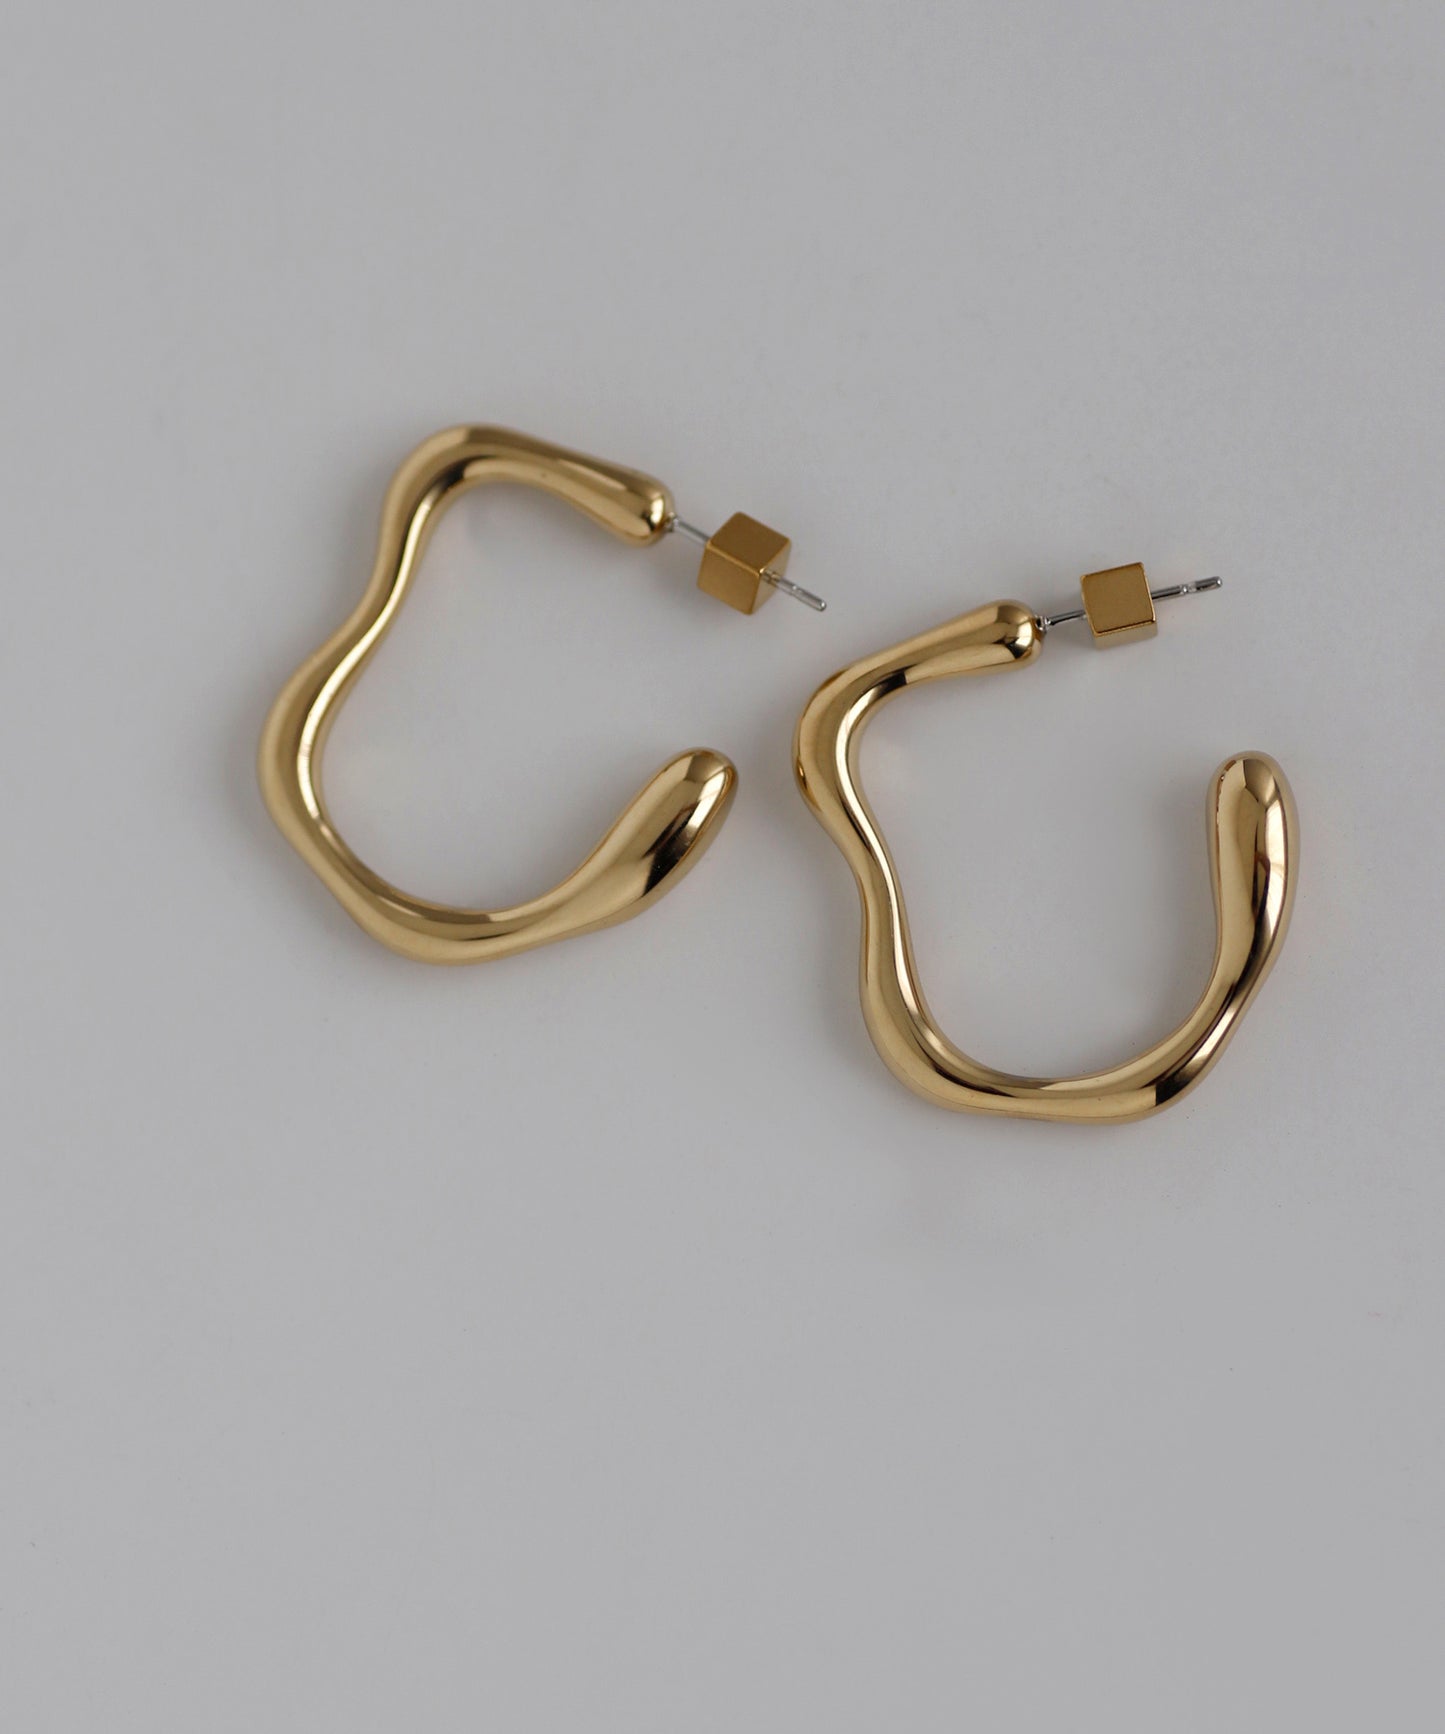 【Stainless Steel IP】Nuanced Metal Earrings